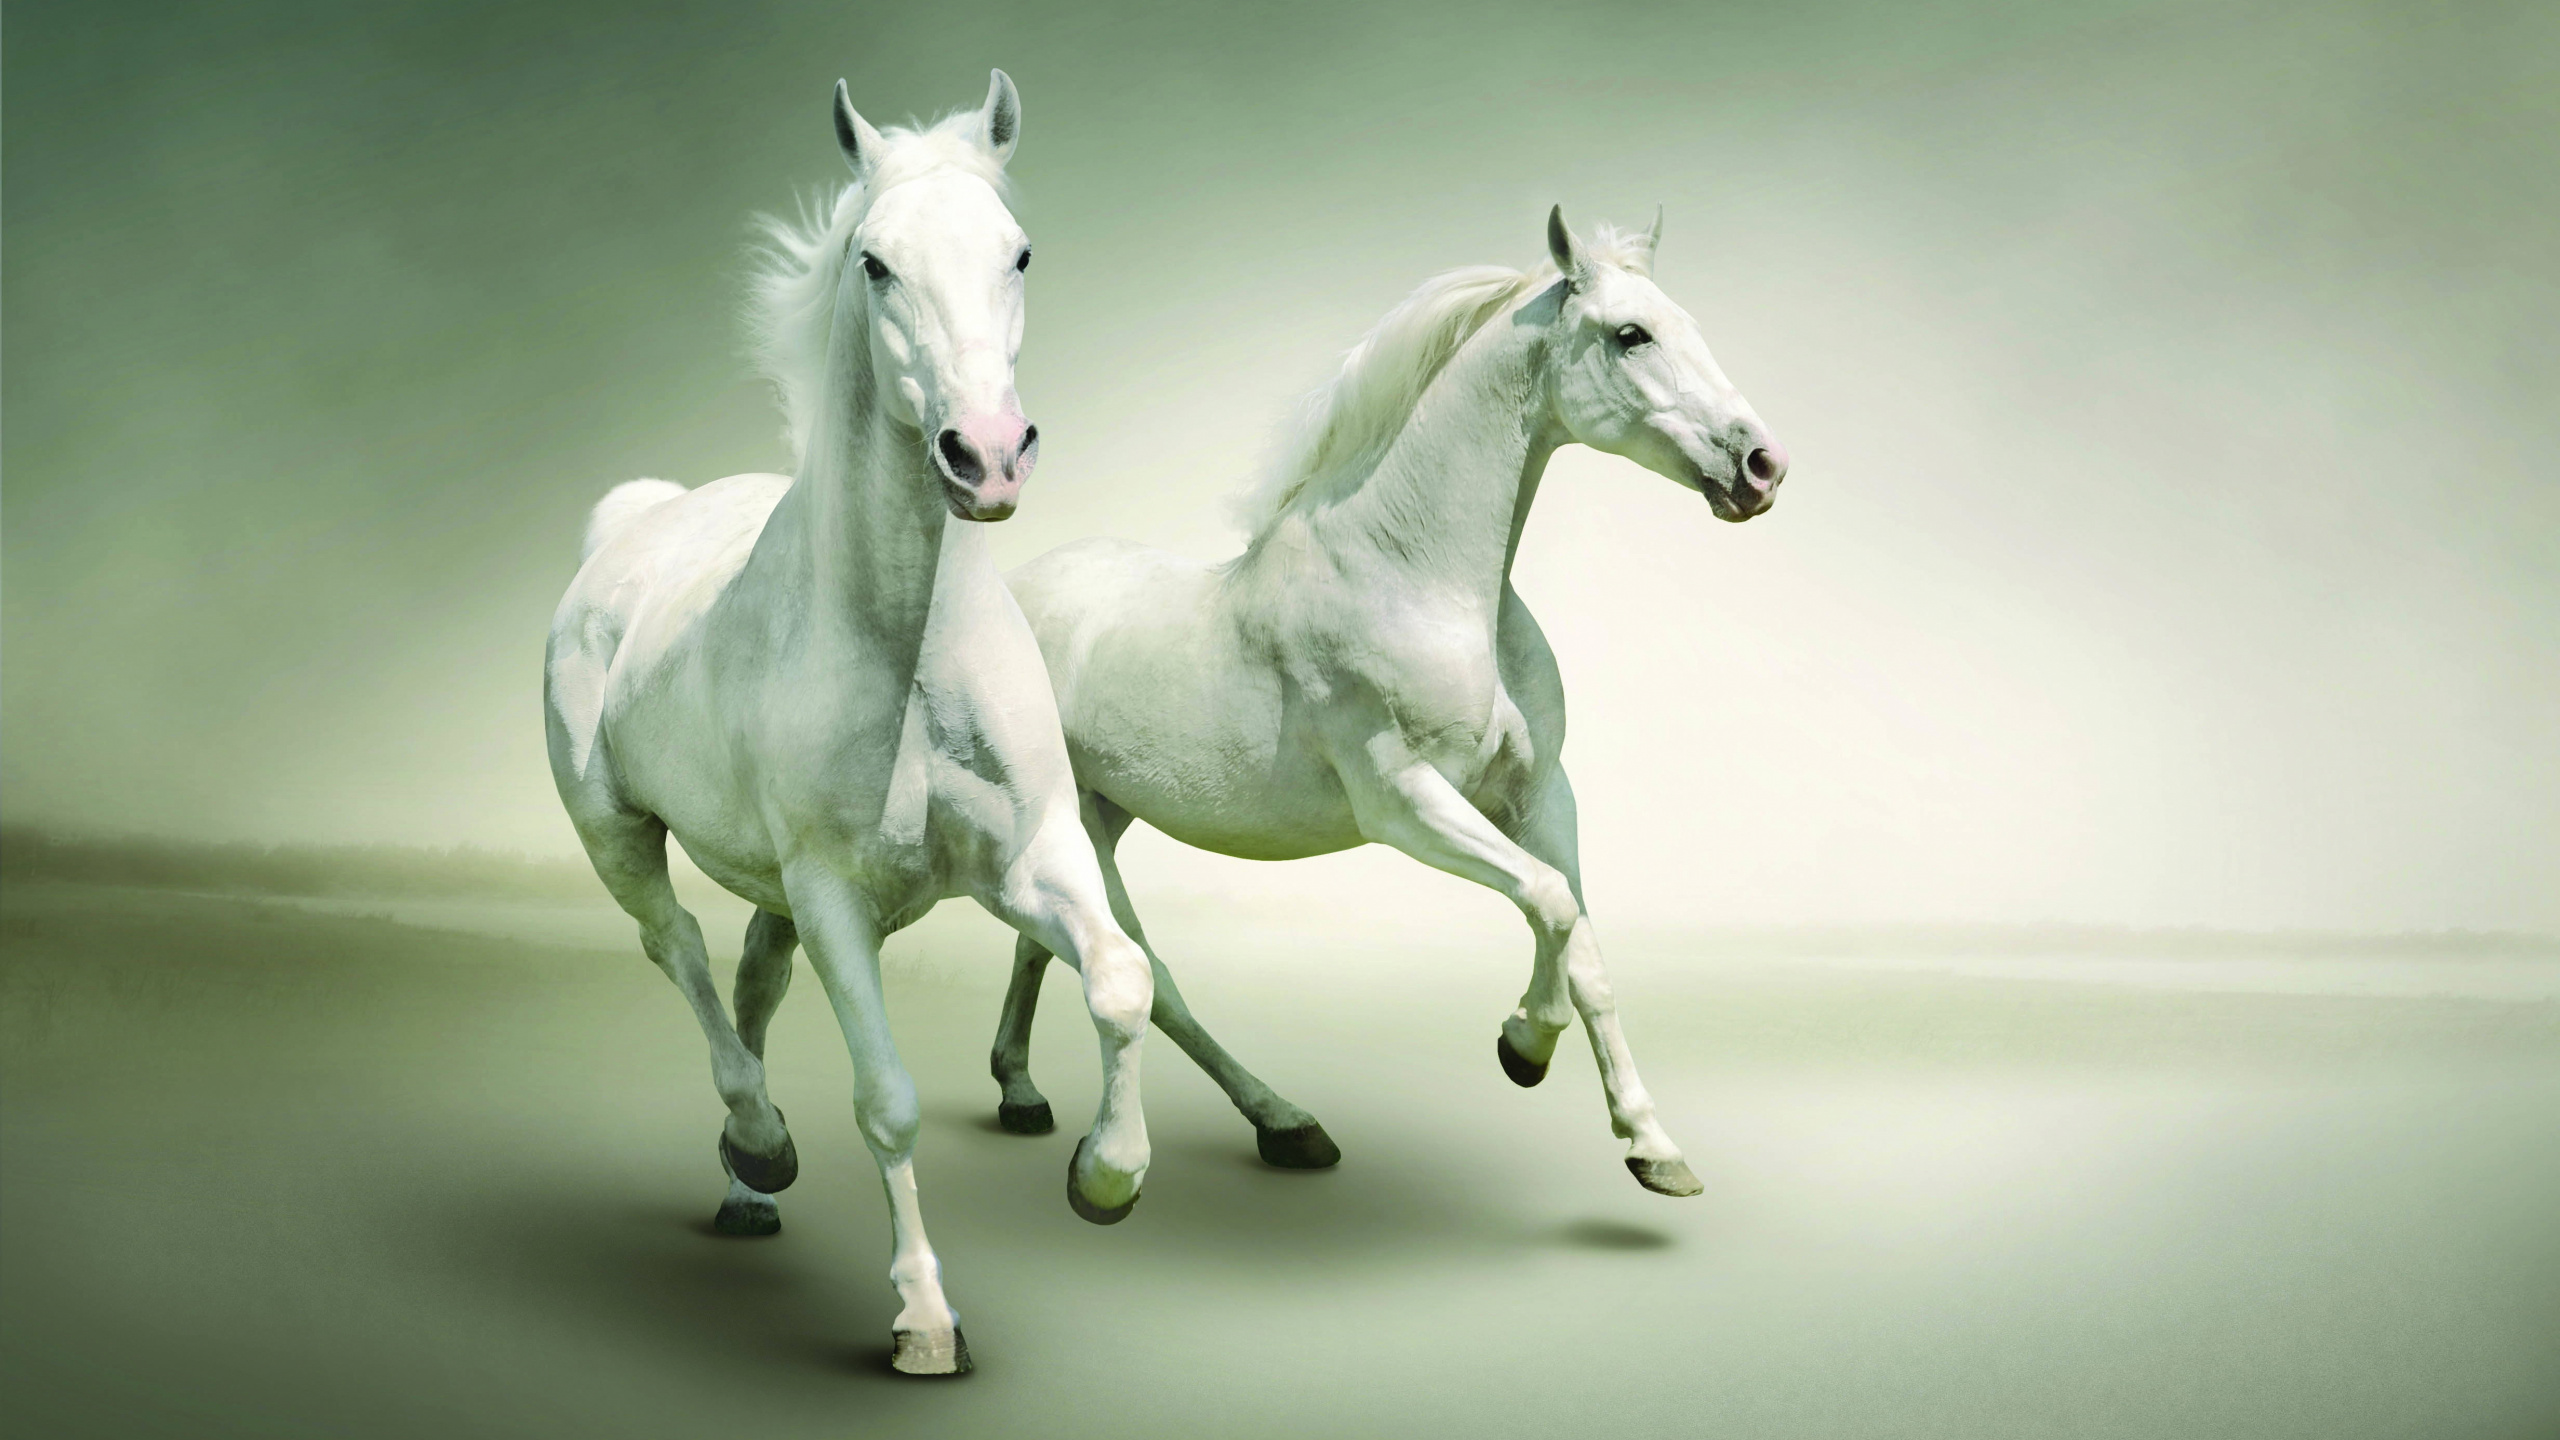 Weißes Pferd Mit Schwarz-weiß Gepunktetem Hemd. Wallpaper in 2560x1440 Resolution